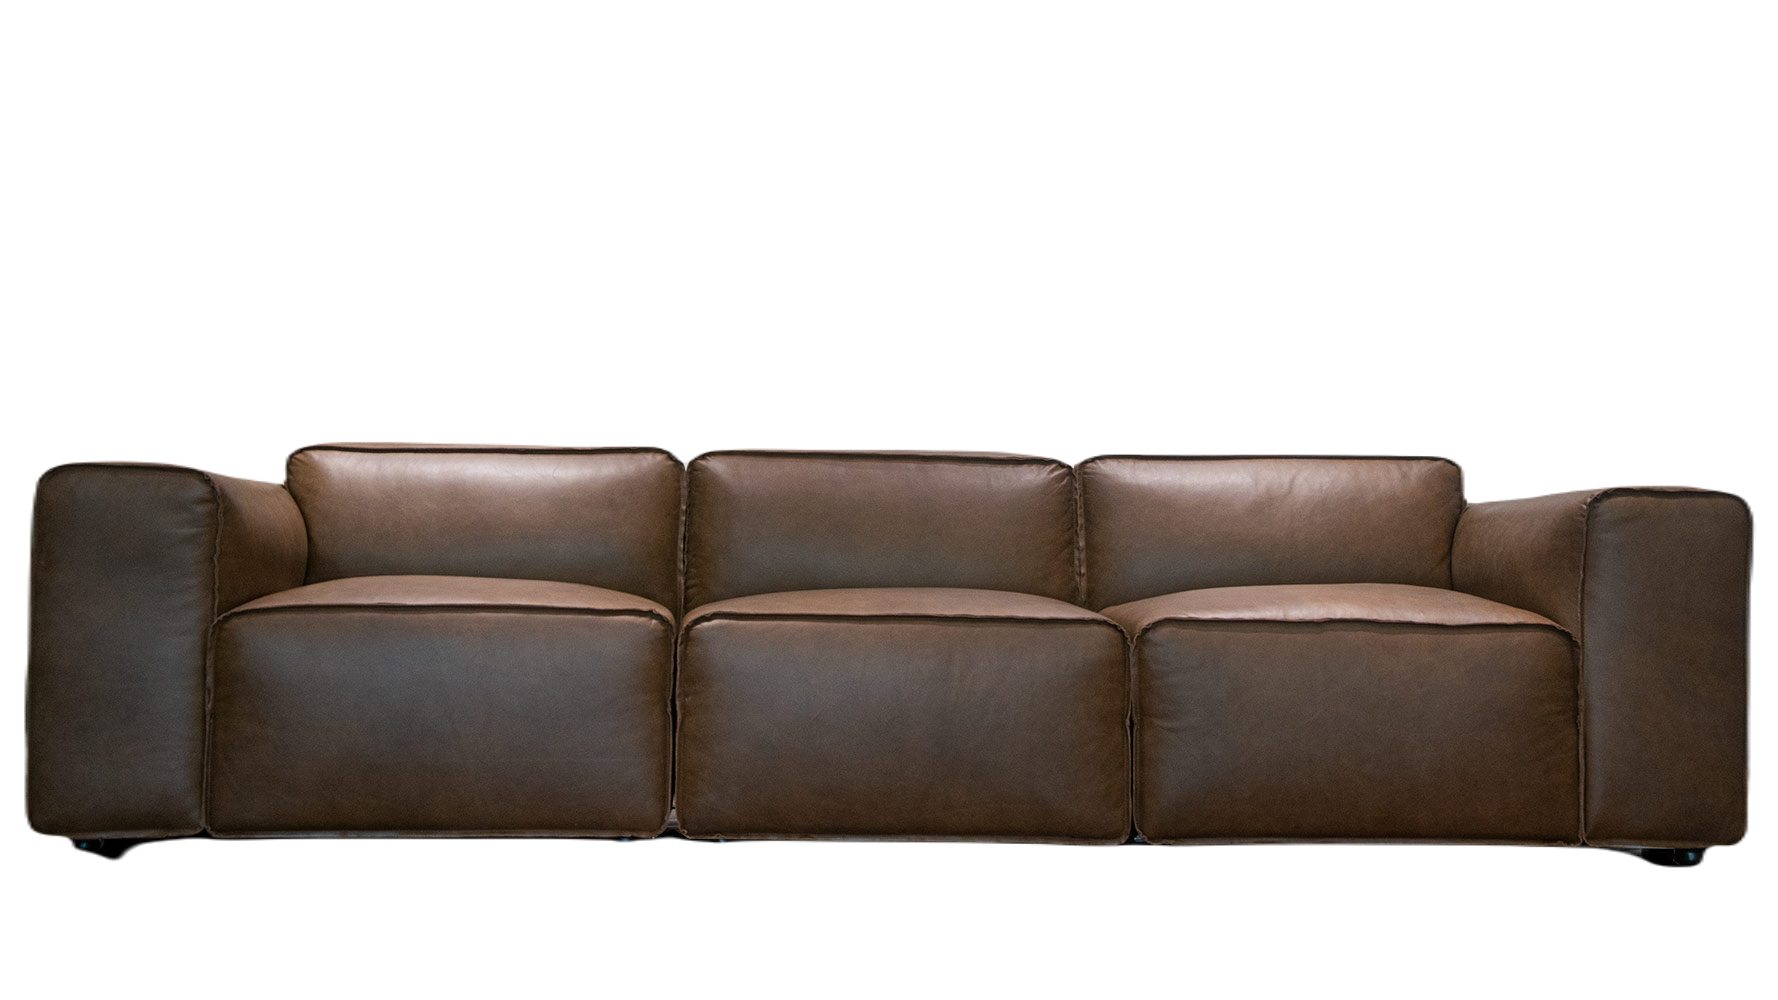 Sofa băng phòng khách hình khối Juno Sofa bọc da cao cấp